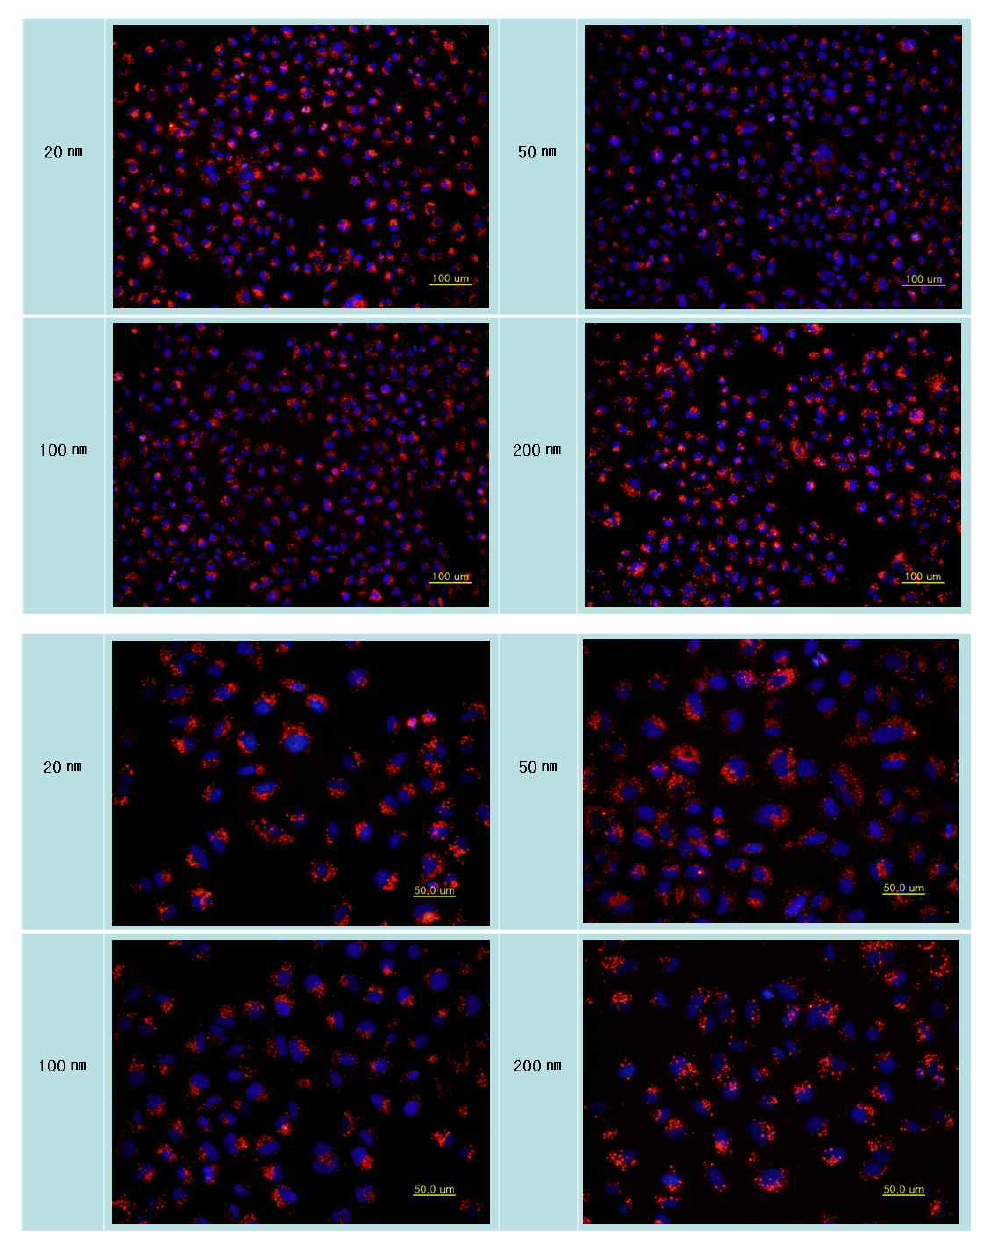 입자의 크기별 RITC-실리카 나노입자의 세포탐식 결과